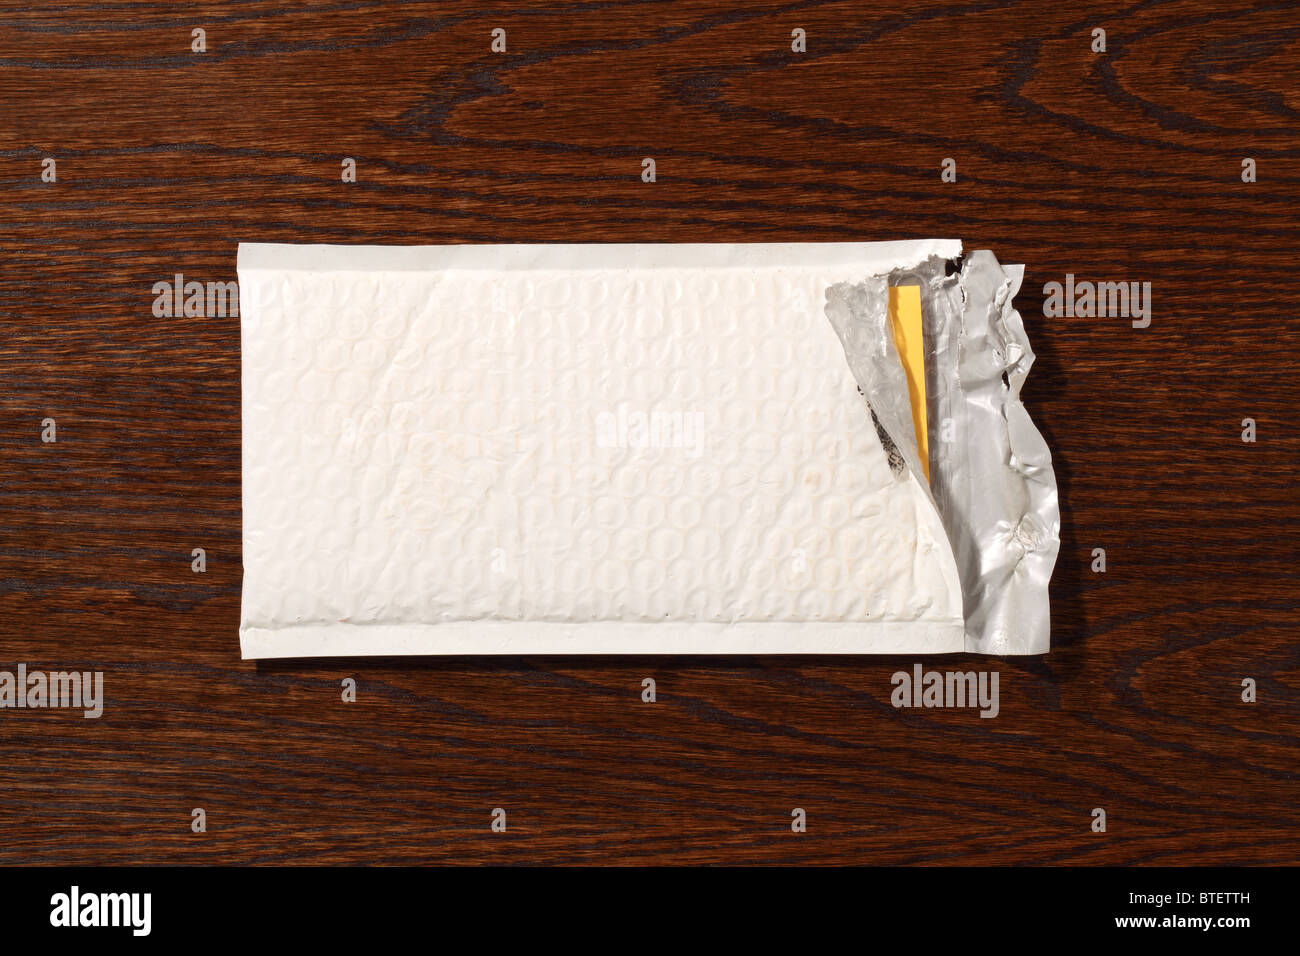 Eine gebrauchte mailing Postumschlag aufgerissen. Eine dunkle braune Holz Schreibtisch-Hintergrund Stockfoto